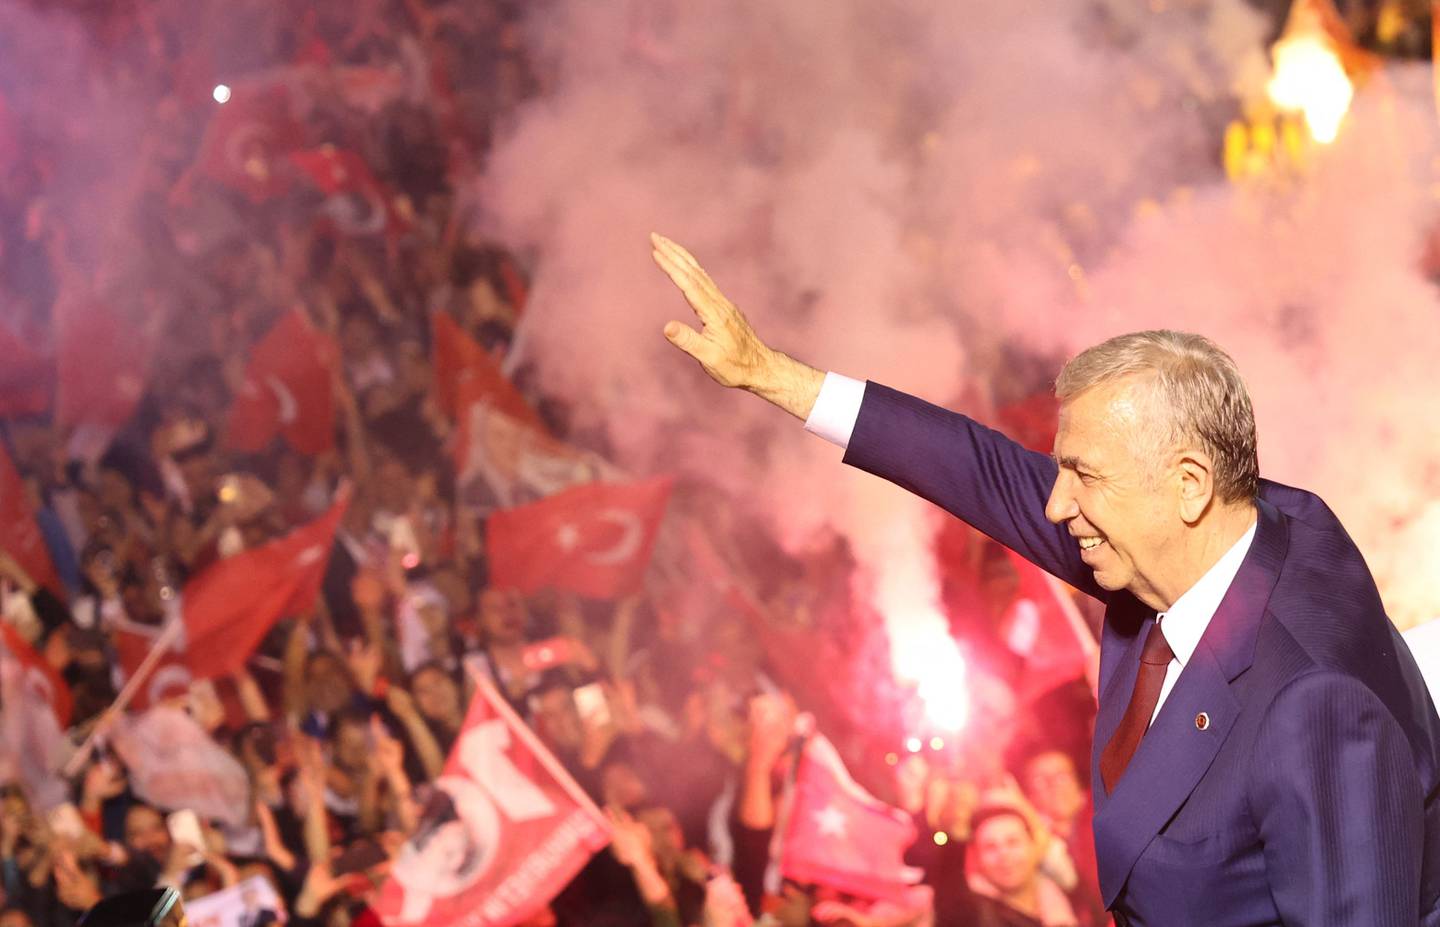 El principal partido de oposición de Turquía reclamó la victoria en Estambul y Ankara, con su estrella política en ascenso,Mansur Yavas, emergiendo de las elecciones locales. como un serio rival para el veterano presidente Recep Tayyip Erdogan. (Foto: Adem ALTAN / AFP)